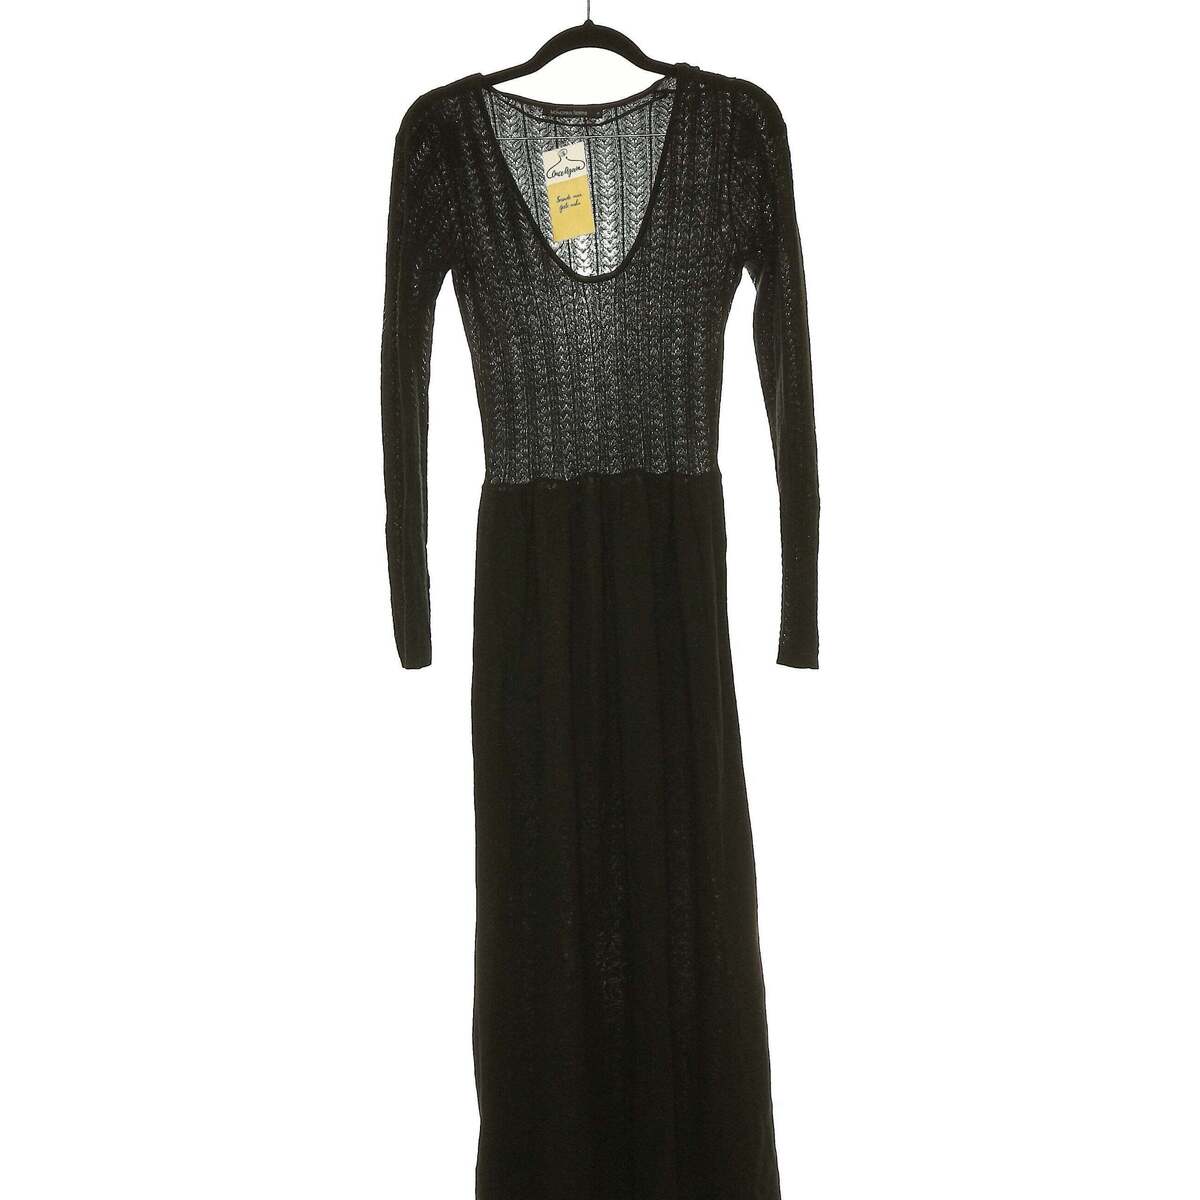 Vêtements Femme Robes longues Monoprix robe longue  34 - T0 - XS Noir Noir